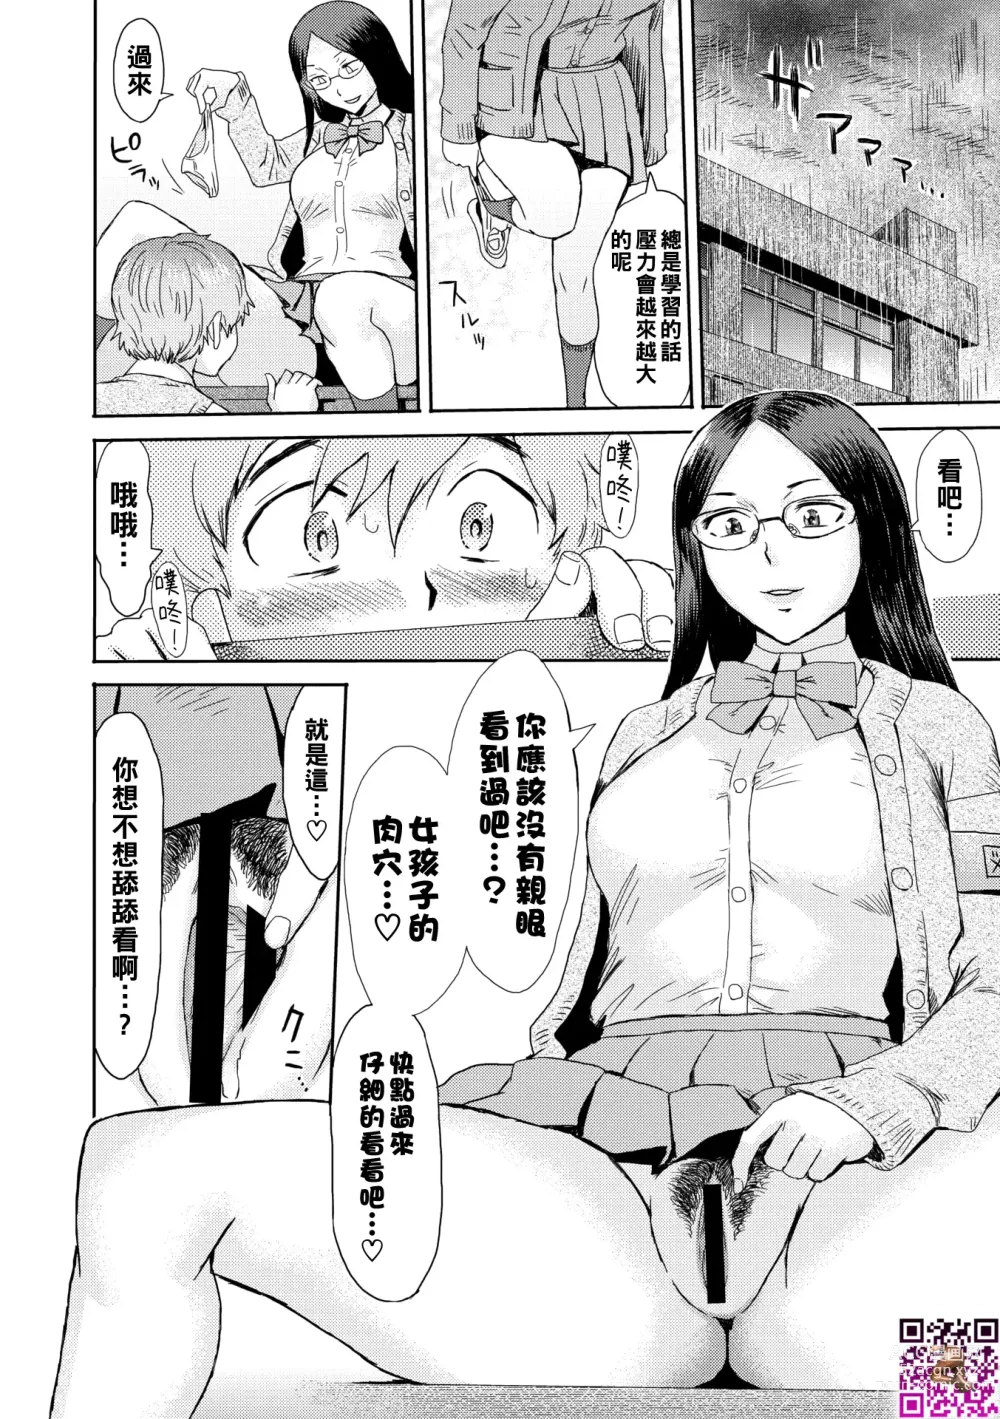 Page 6 of manga Danger Pair